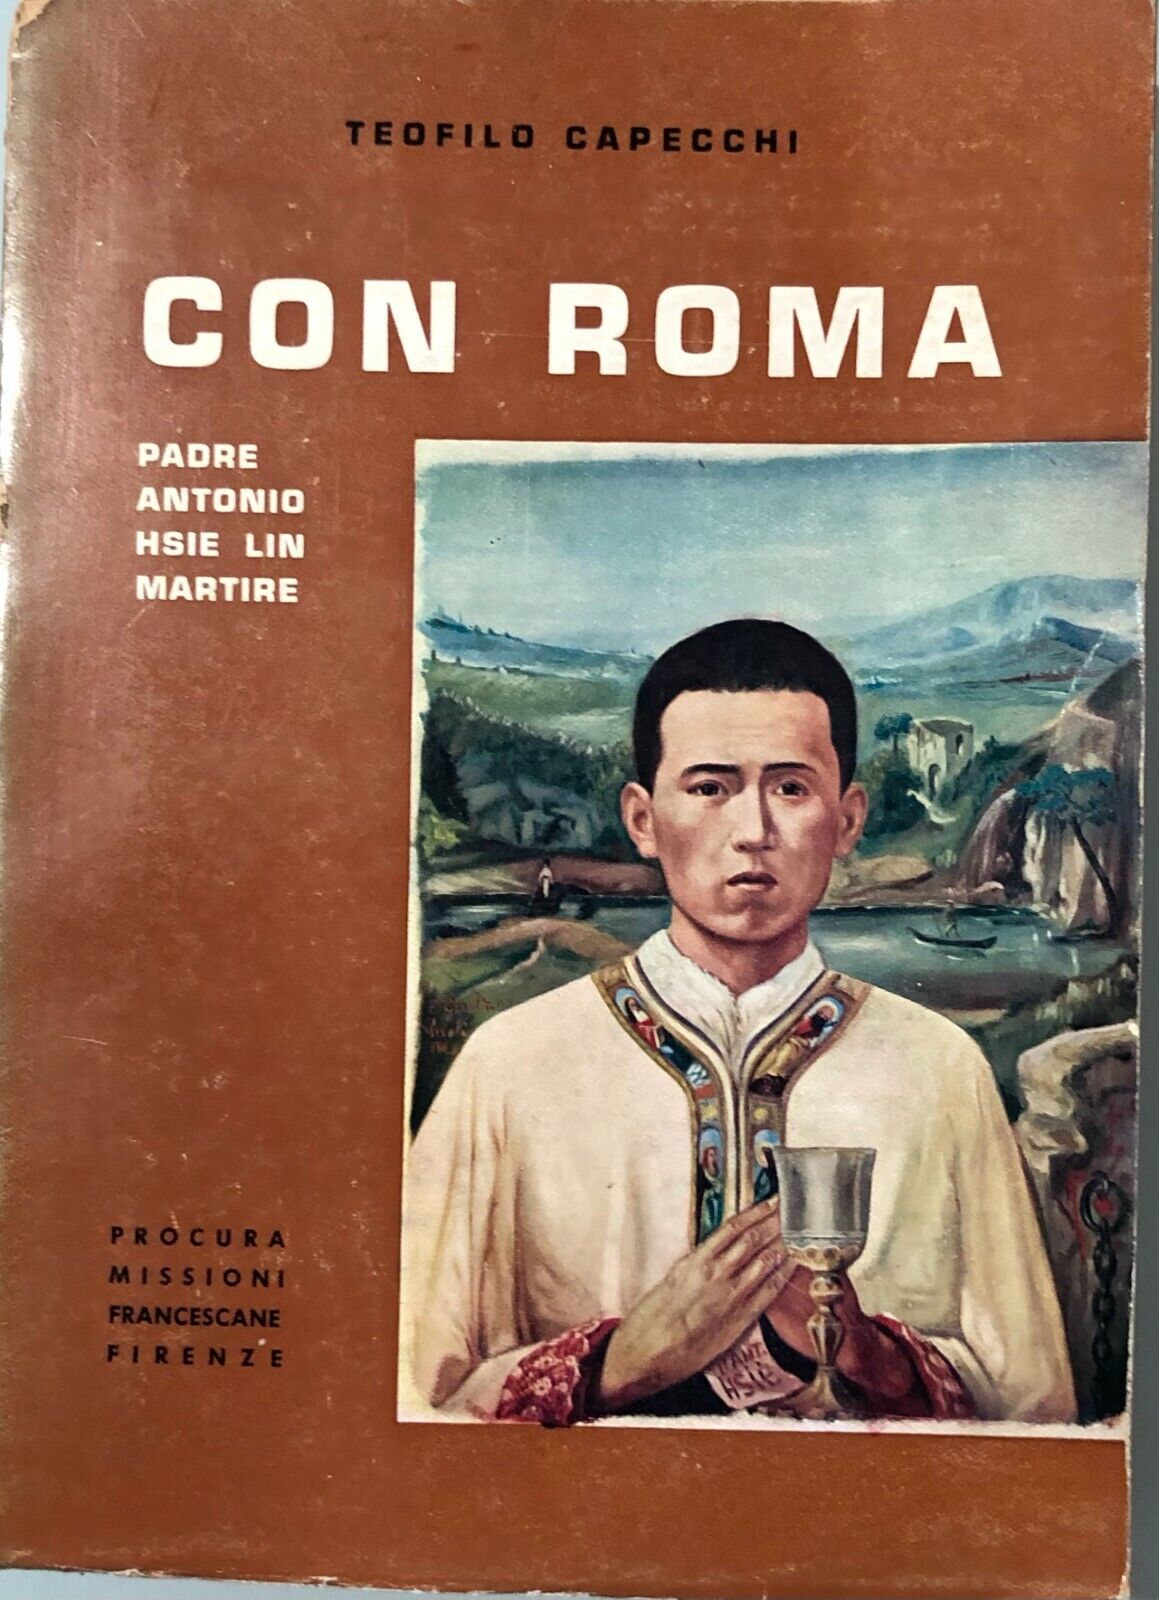 Con Roma Padre Antonio Hsie Lin Martire di Teofilo Capecchi, 1964, PMFF